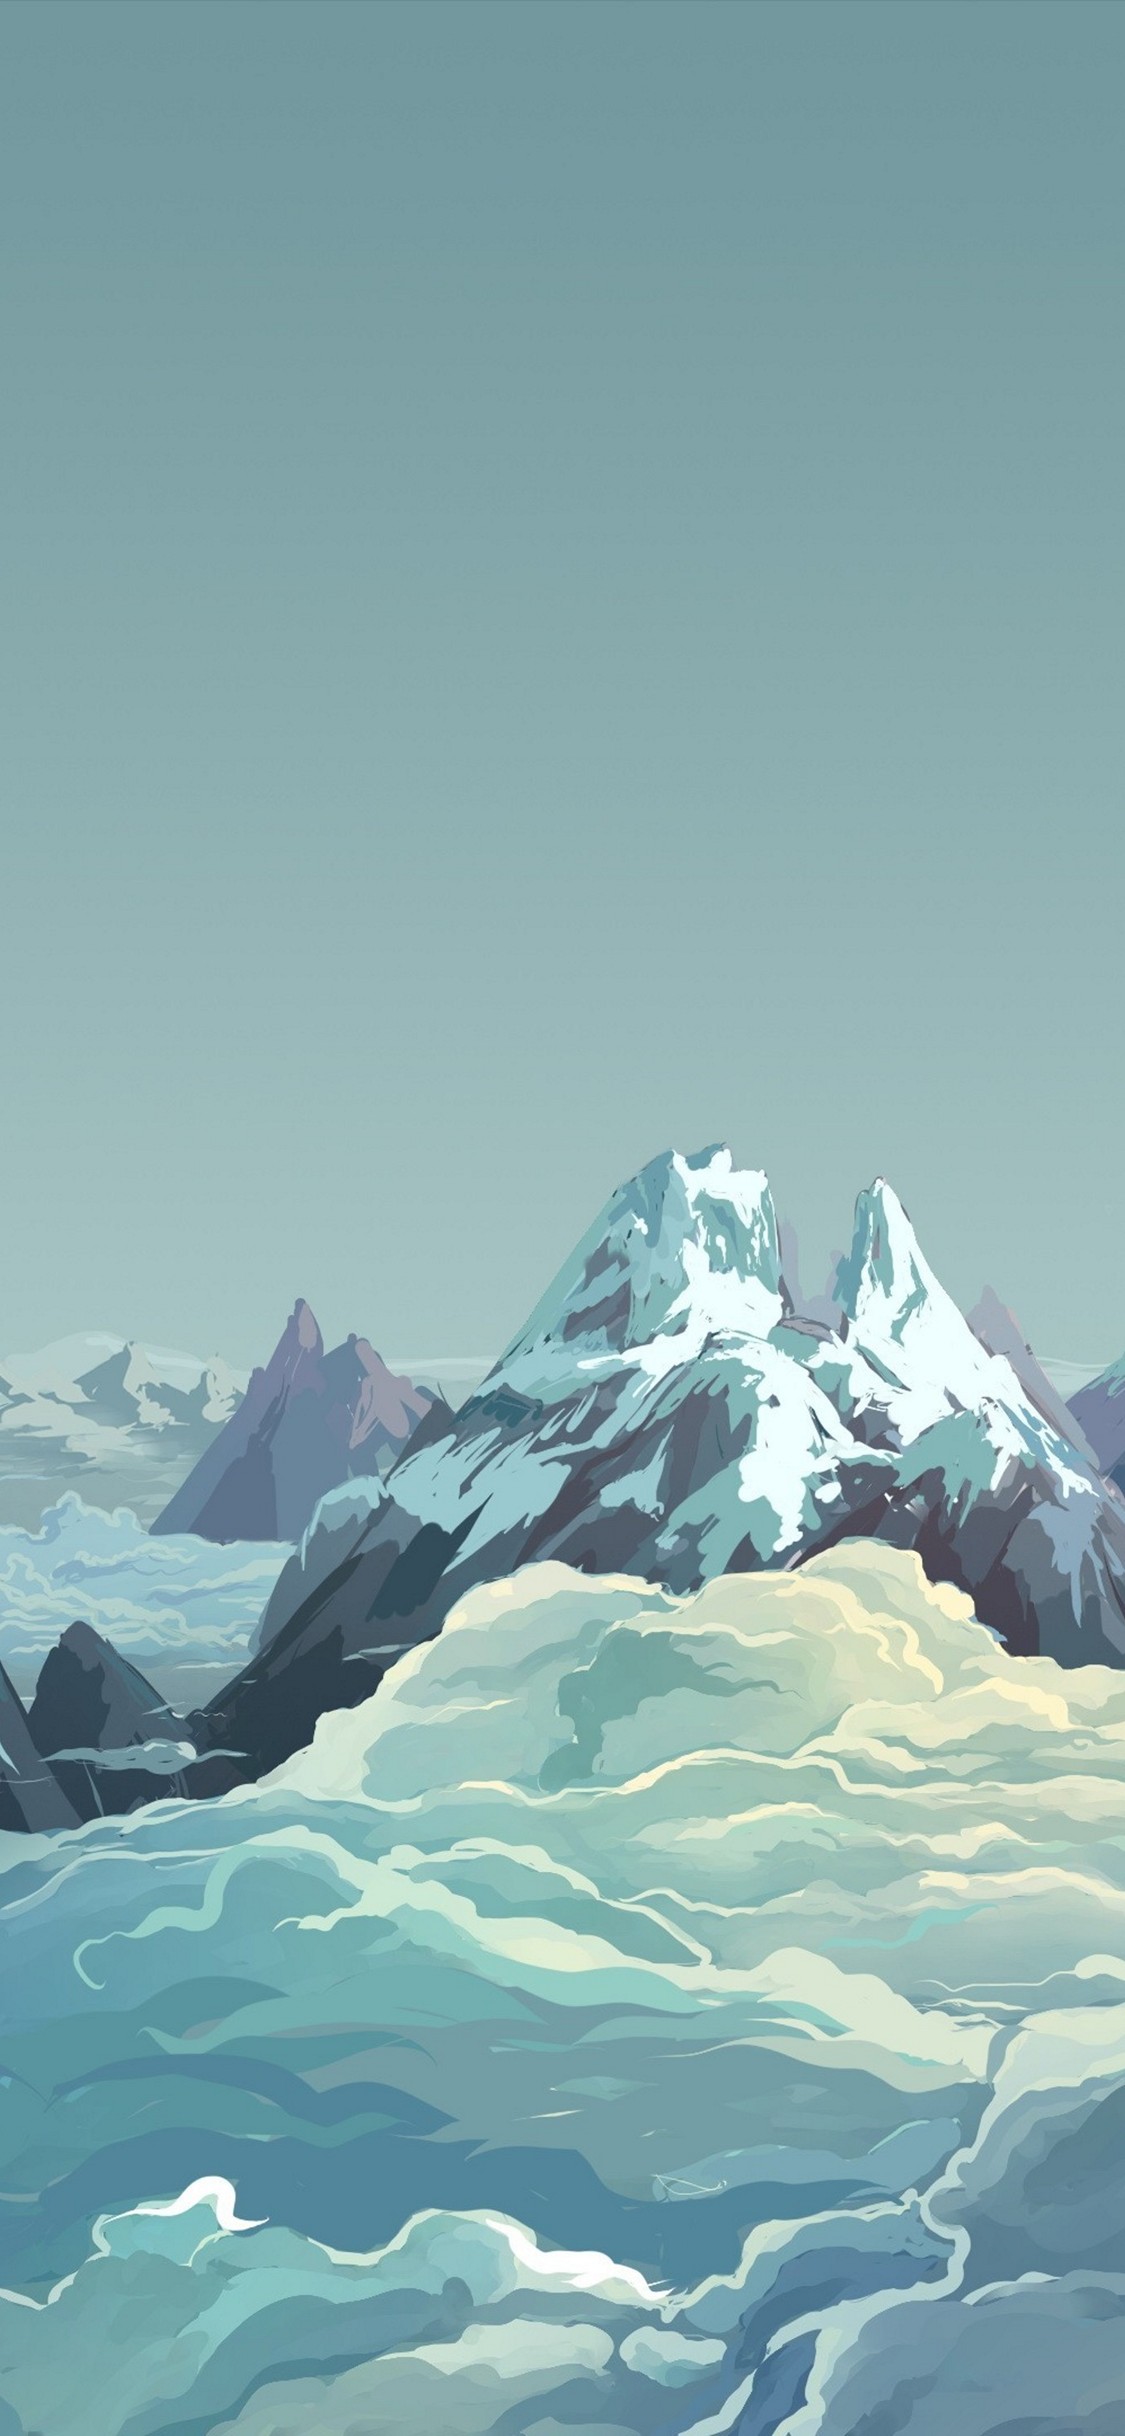 雪山と雲と空のイラスト Iphone X 壁紙 待ち受け スマラン